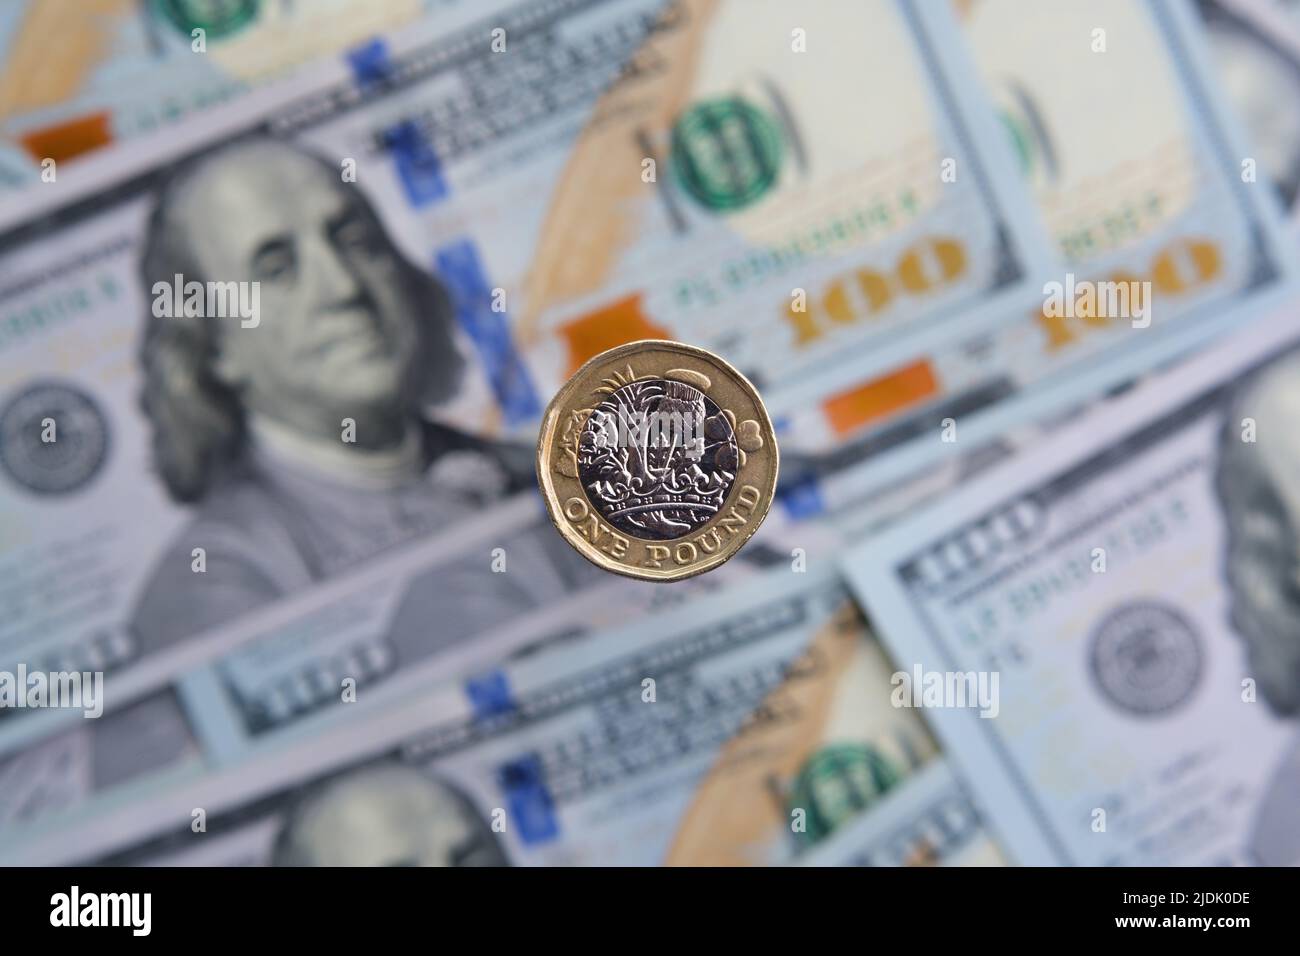 Moneta britannica da un libbra in primo piano e blurred banconote del dollaro di hunder sullo sfondo. Concetto di inflazione. Non un montaggio, foto reale. Foto Stock